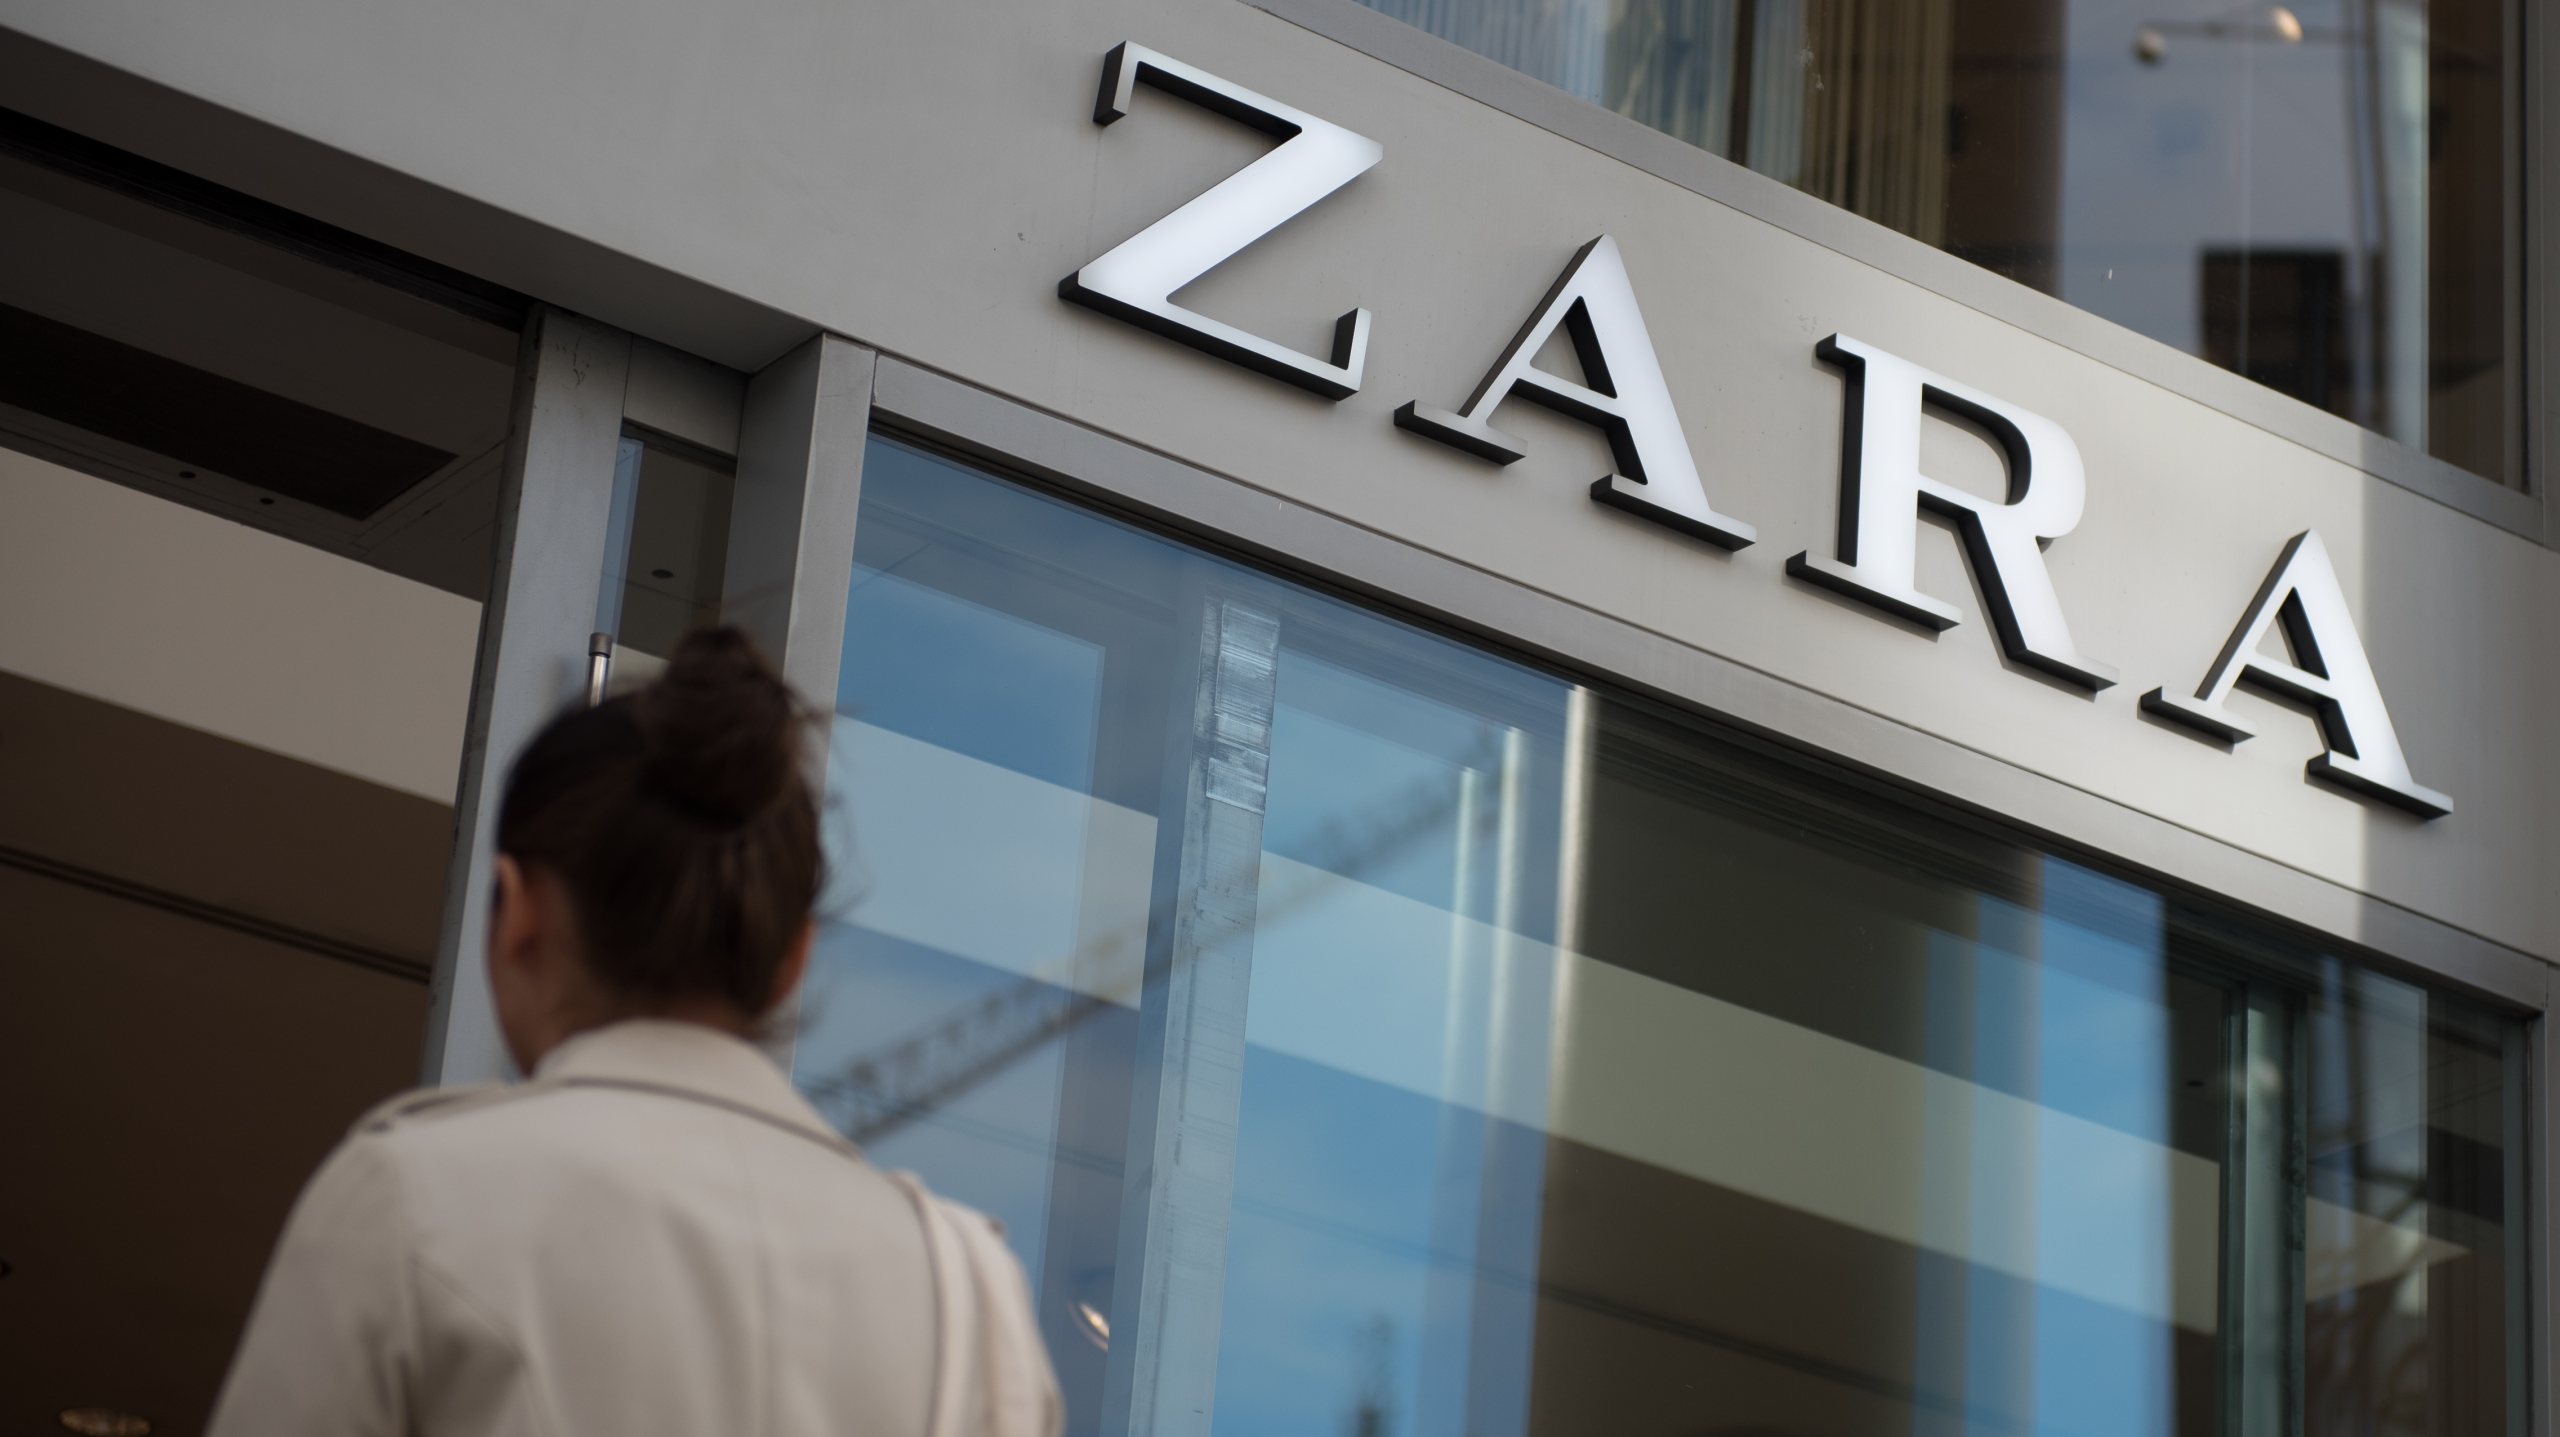 A Rússia representa cerca de 8,5% do EBIT (resultado operacional) global do grupo Inditex que detém a Zara